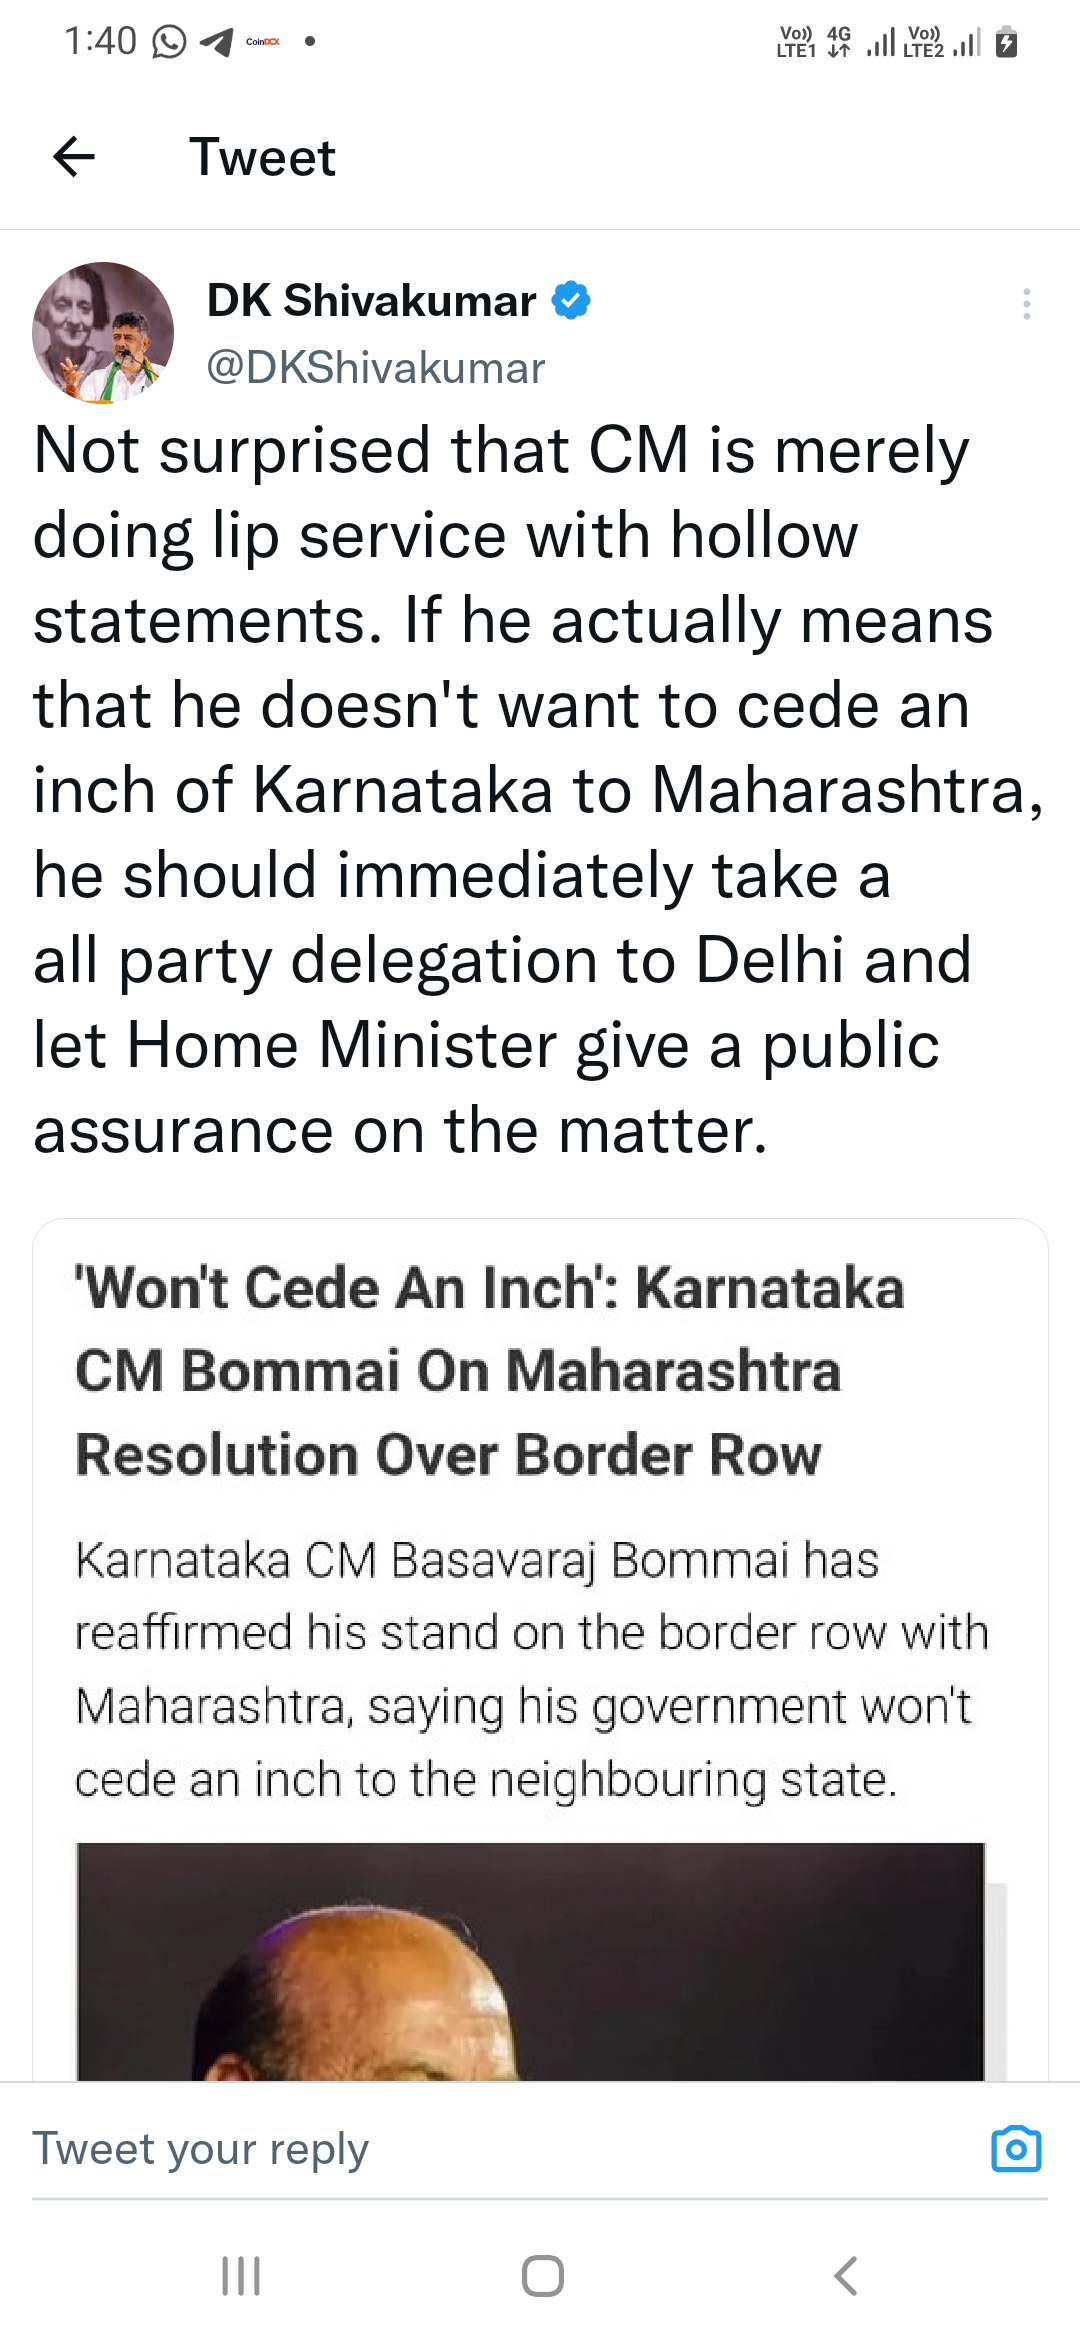 DK Shivakumar Tweet about CM statement